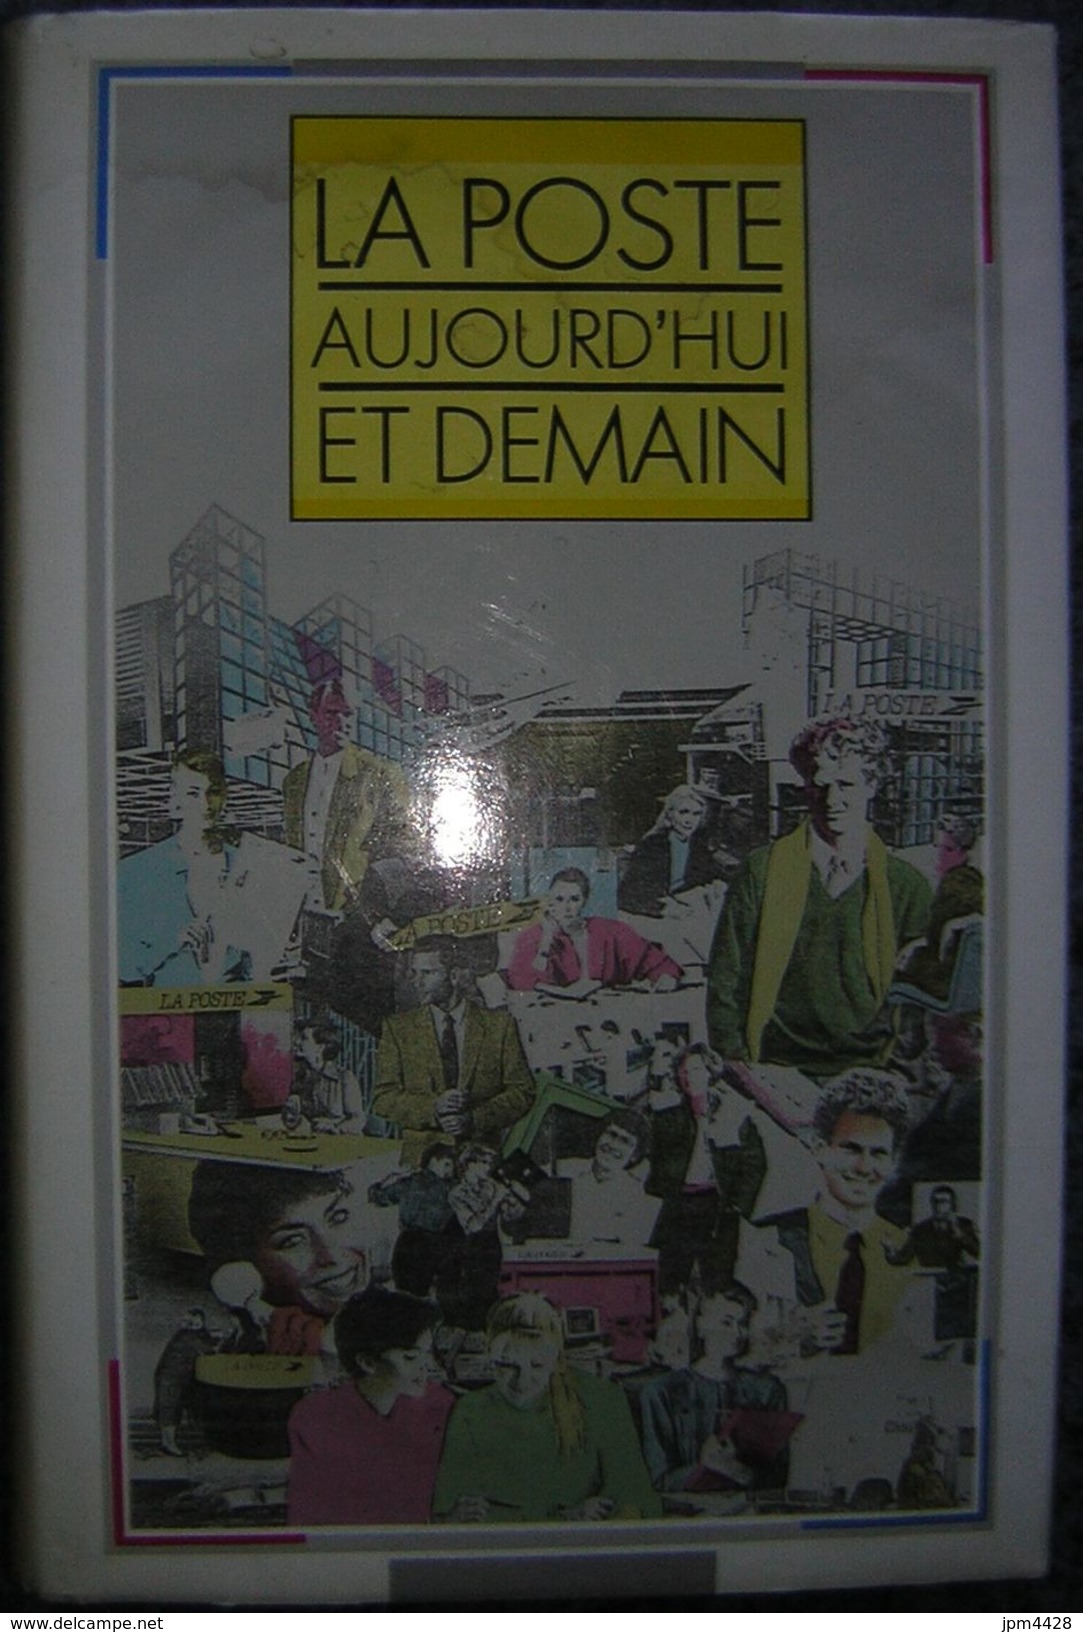 La Poste Aujouird'hui Et Demain Livre De 1989, 222 Pages - Ministére Des Postes, Des Télécomminications Et De L'espace - Handboeken